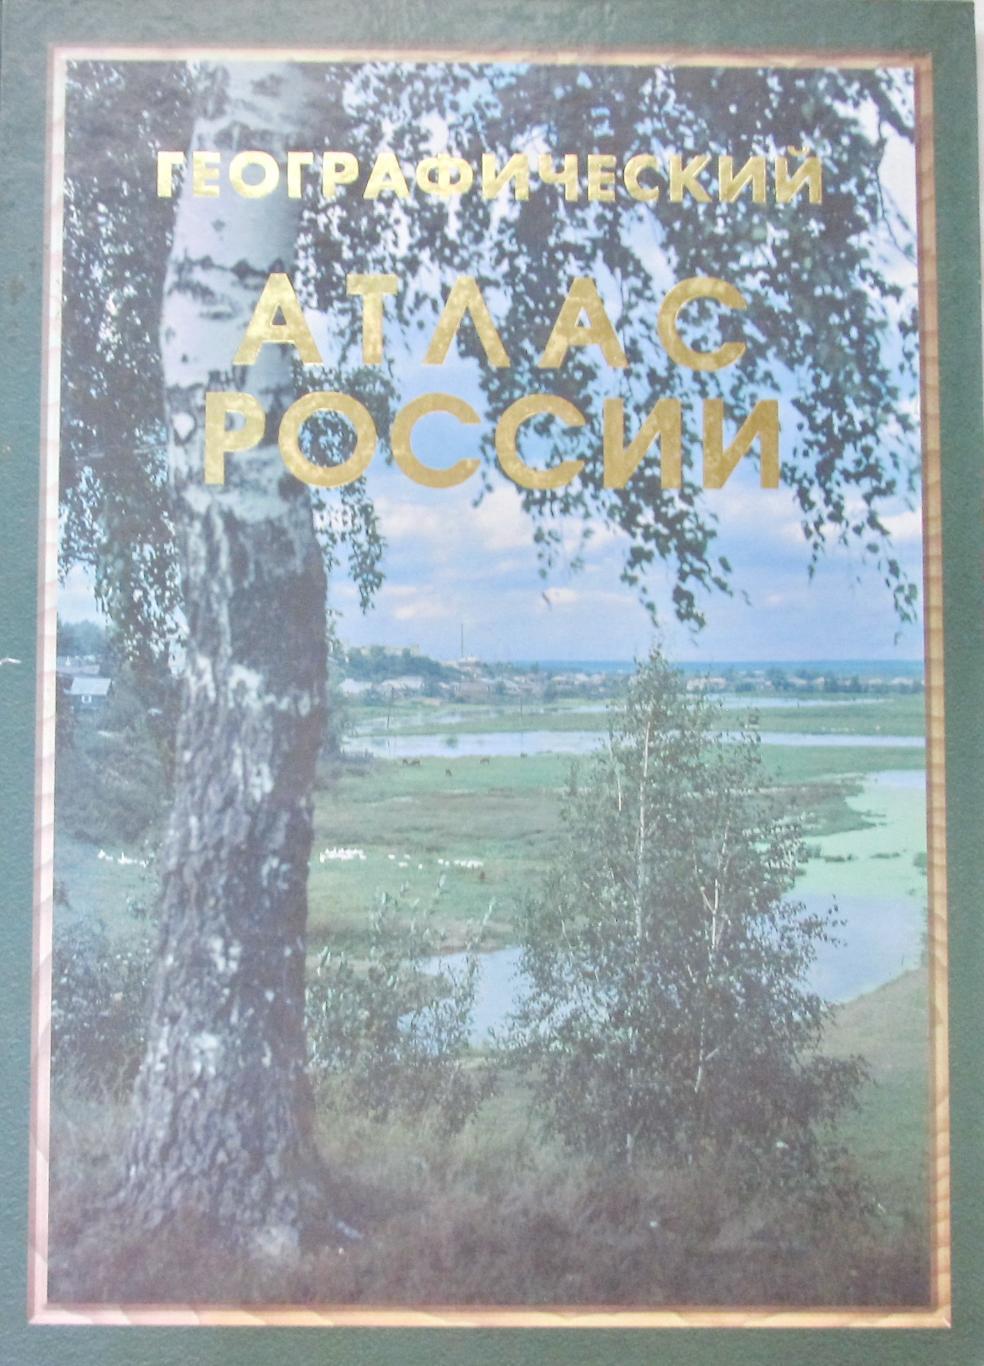 Географический атлас России, 1997 год.